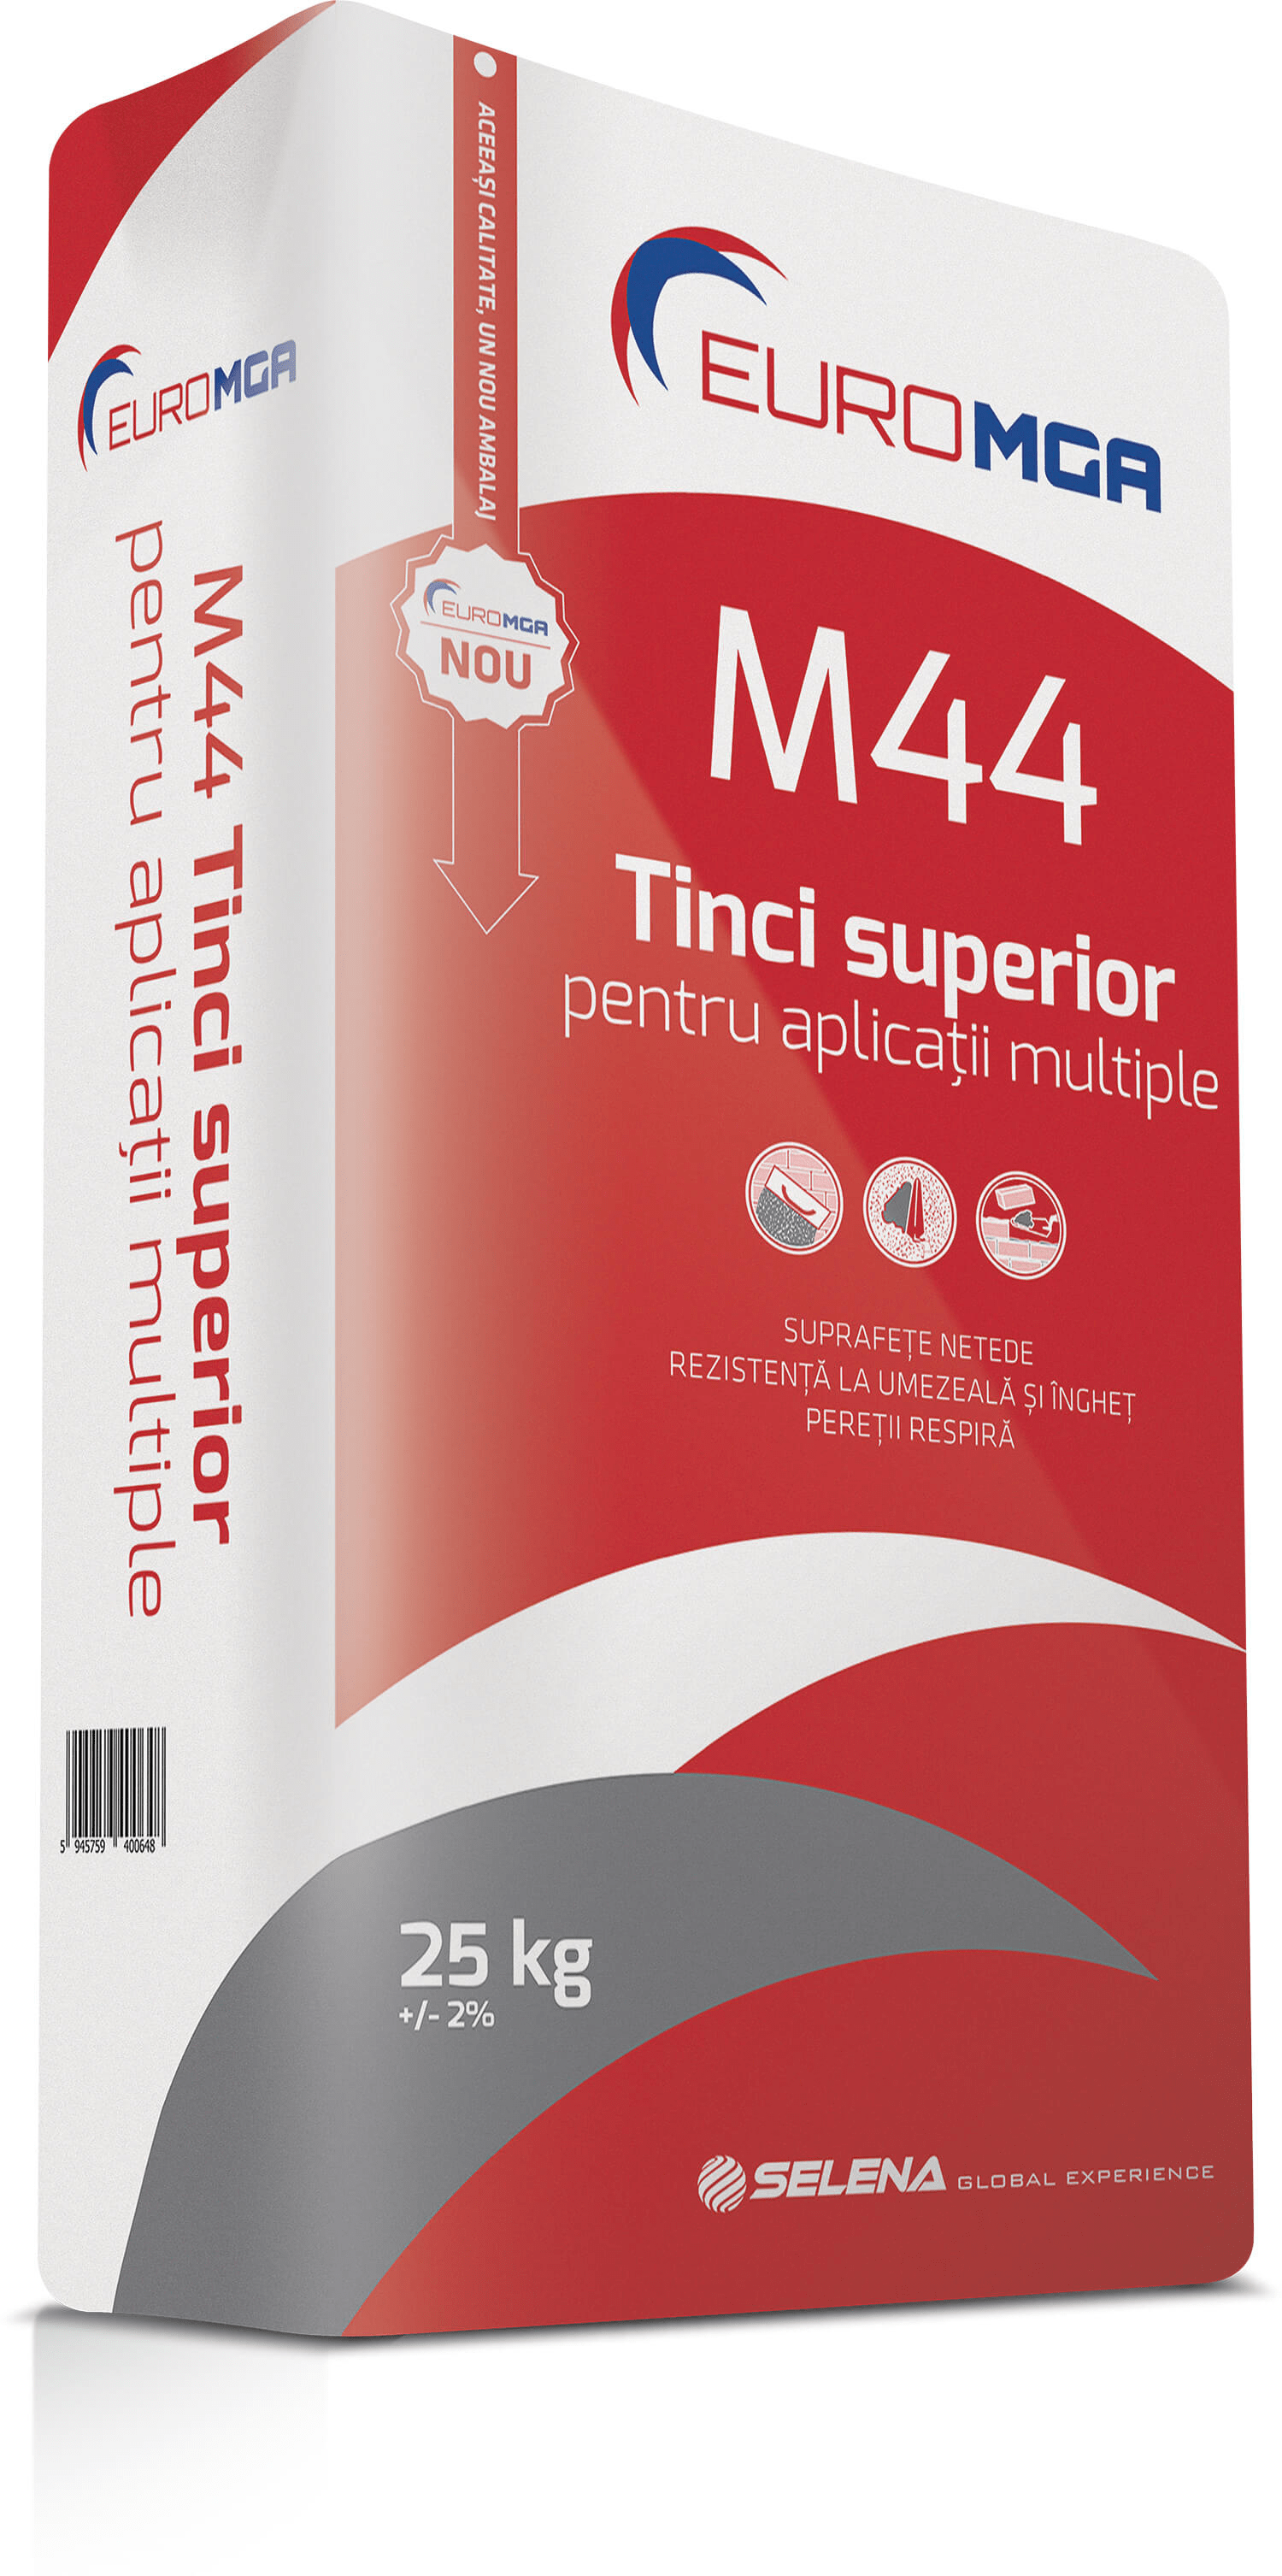 TINCI GRI SUPERIOR PENTRU APLICATII MULTIPLE EUROMGA M44 25KG